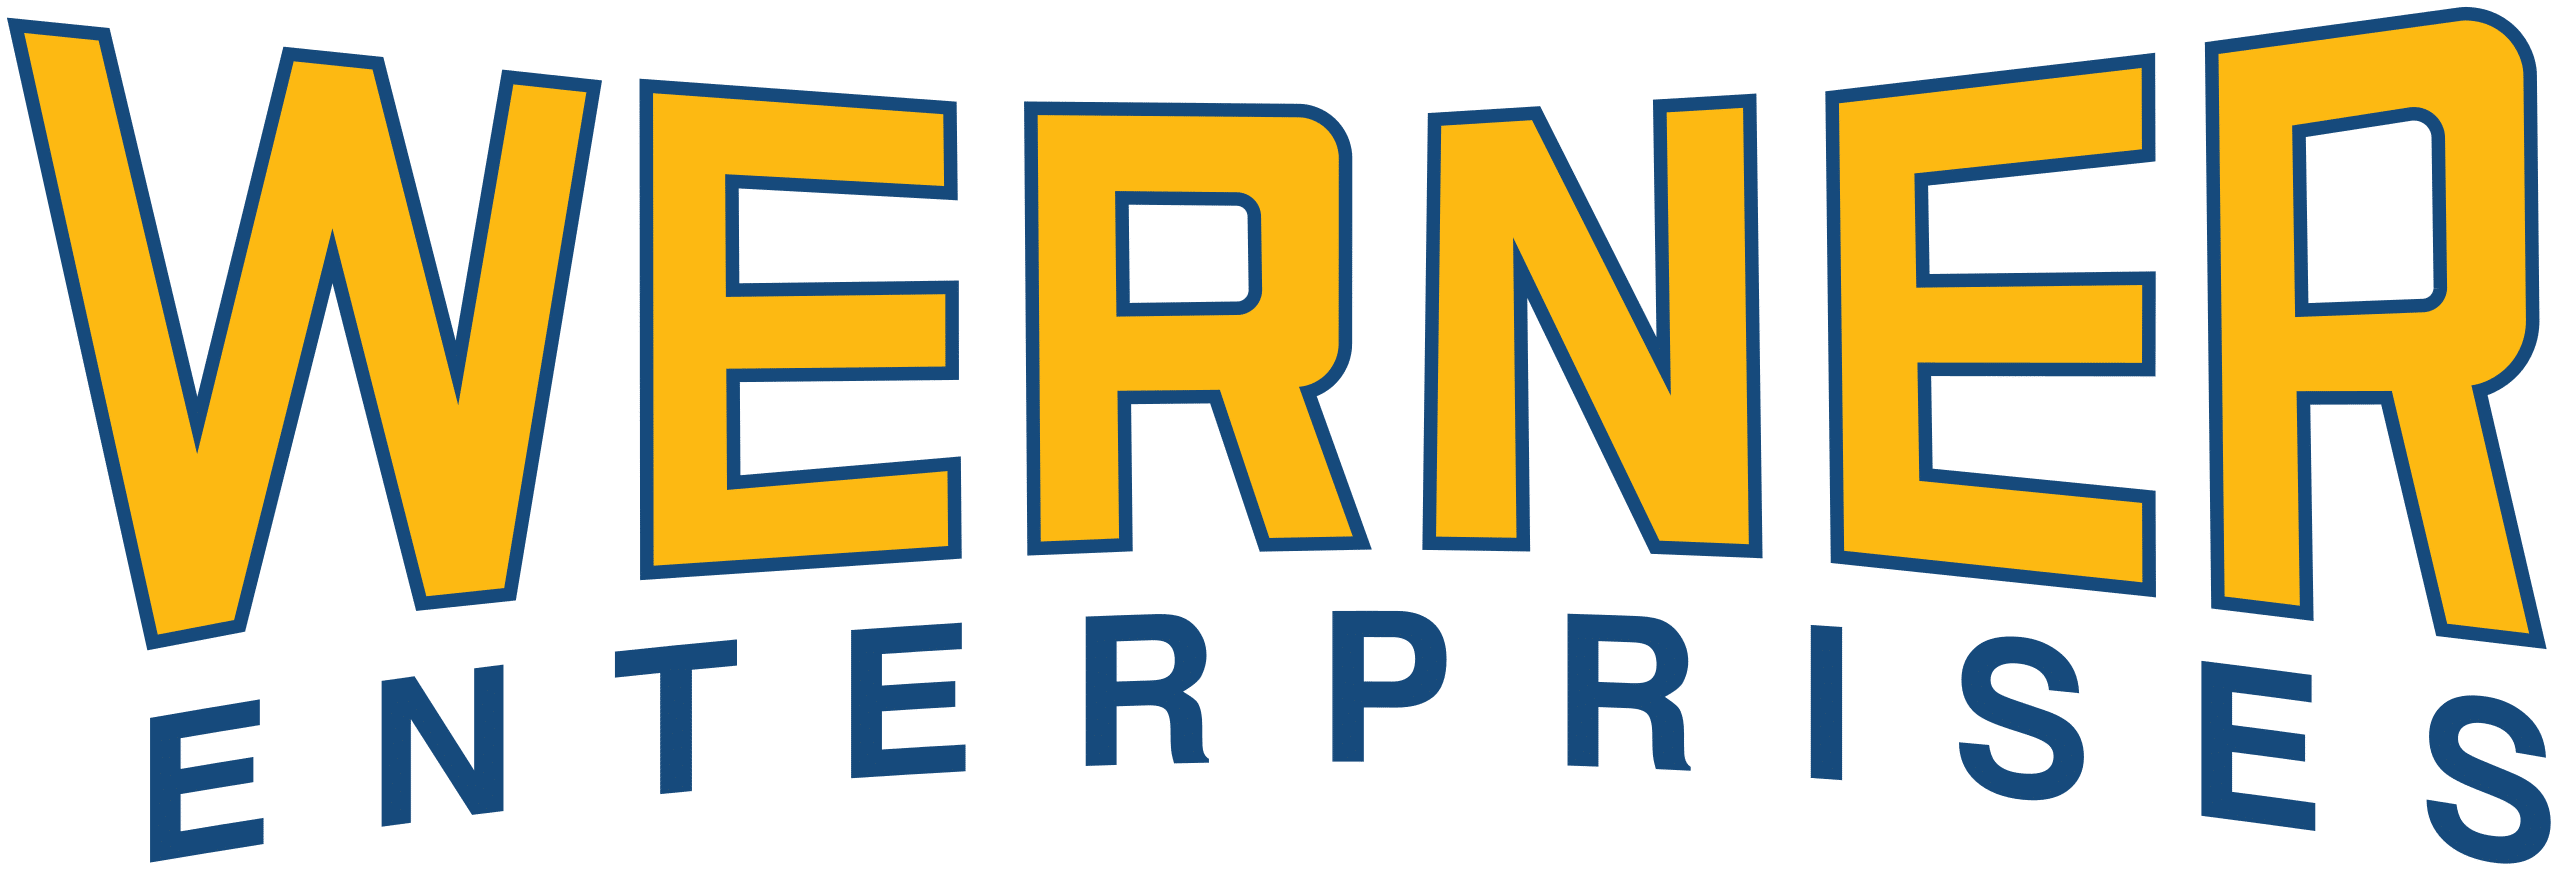 Werner enterprises logo